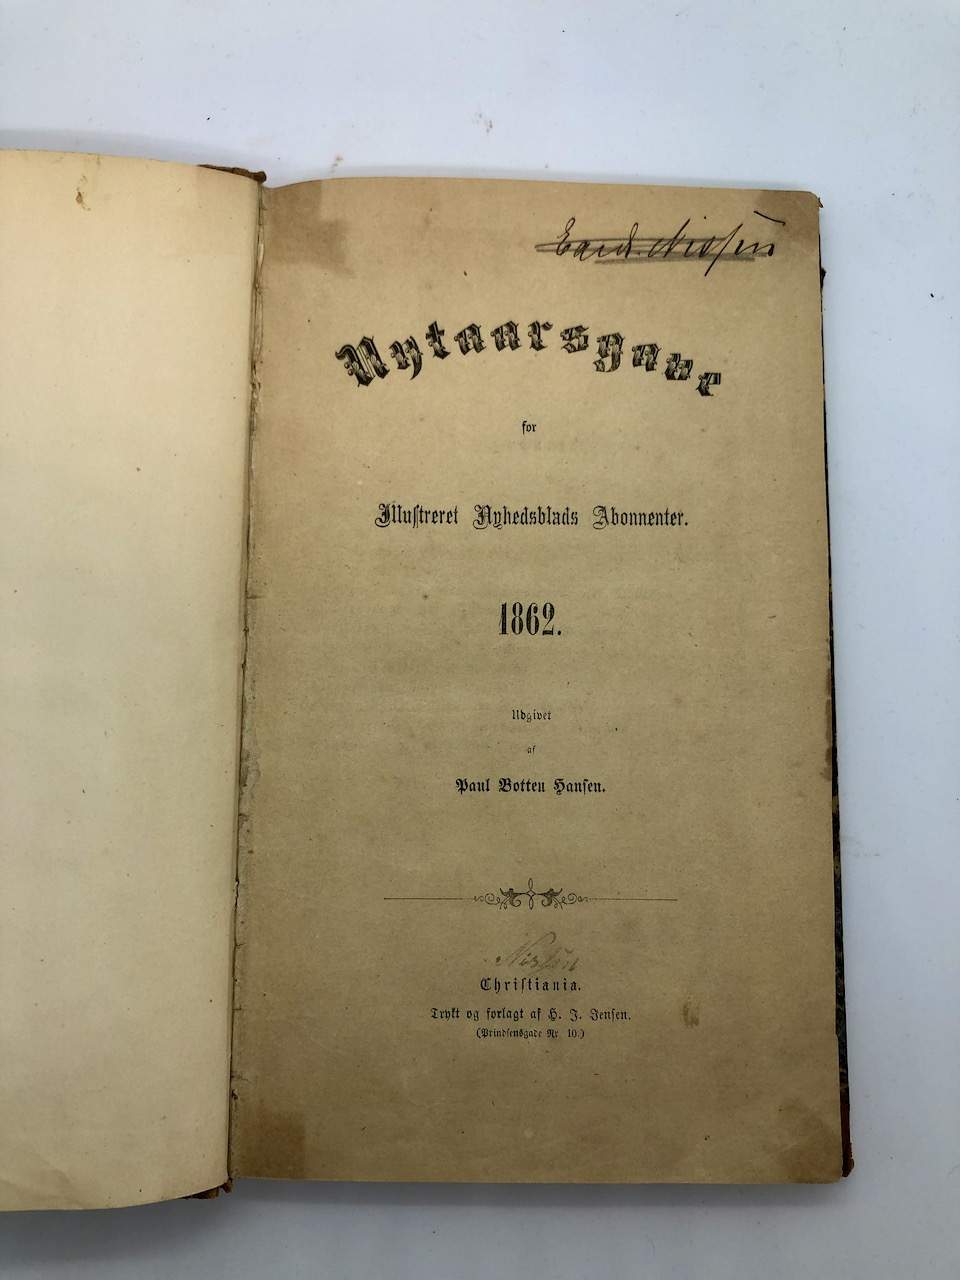 Første publisering av Terje Vigen av Henrik Ibsen 1862